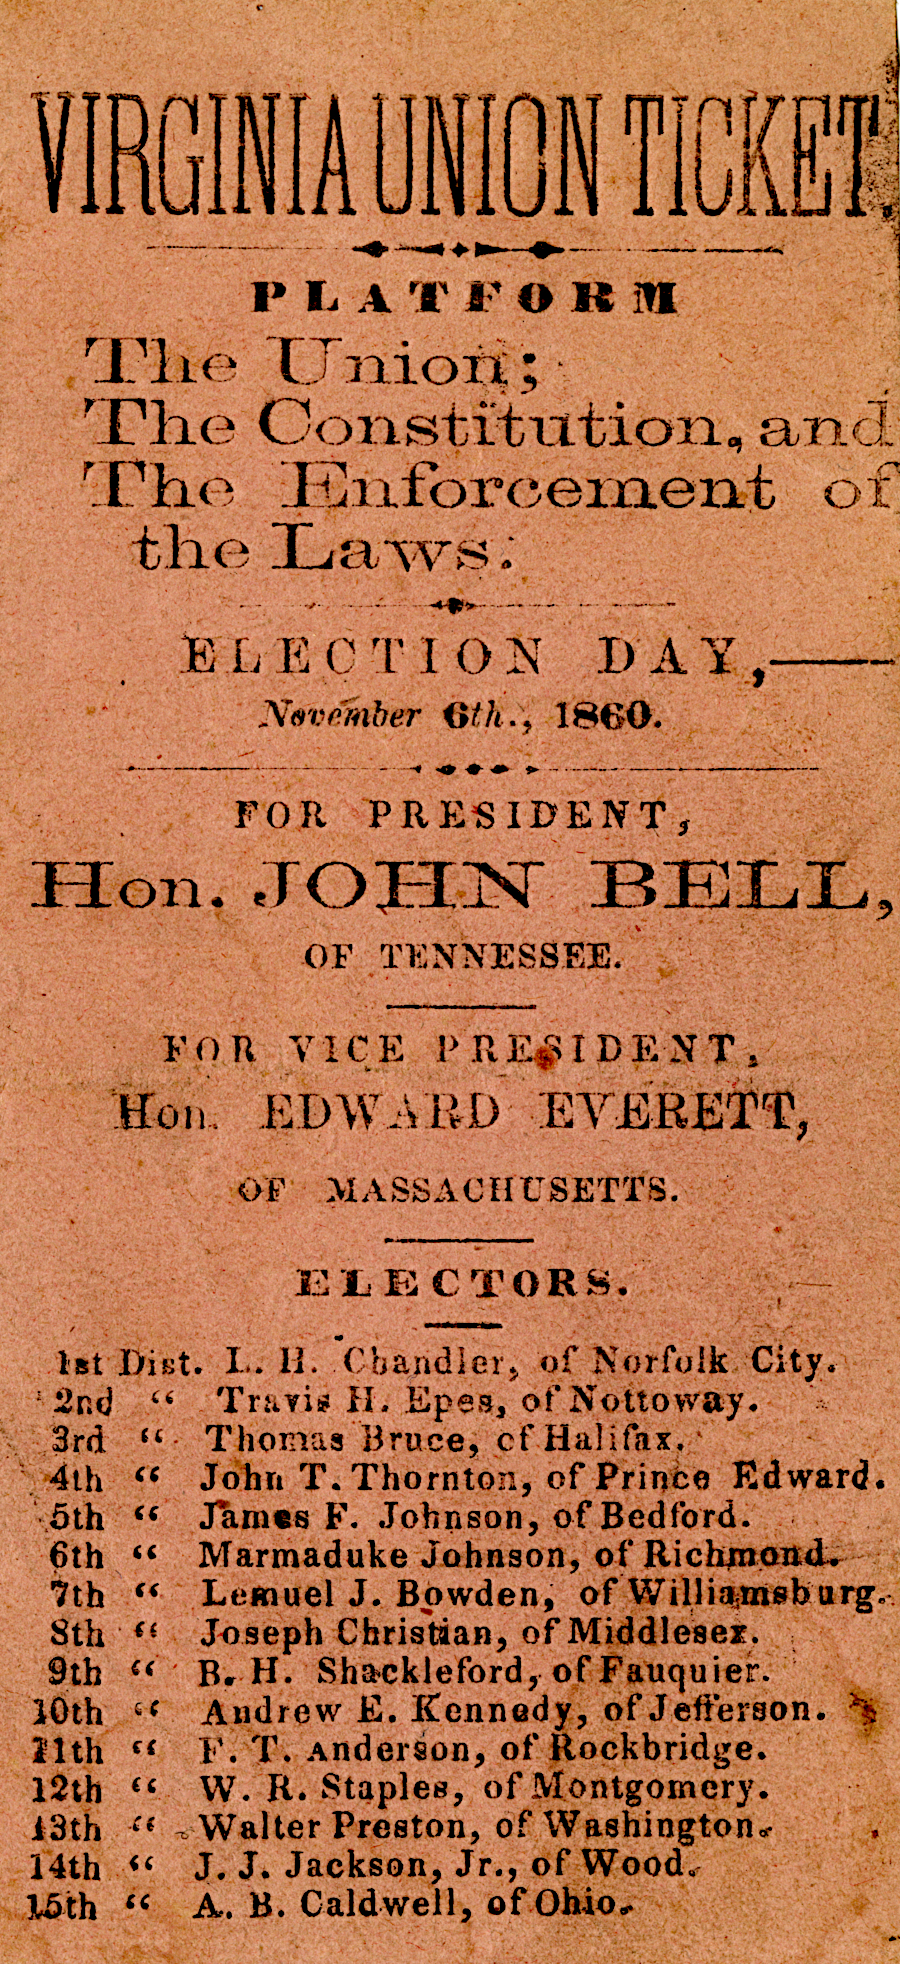 in 1860, Virginia had 15 electoral votes